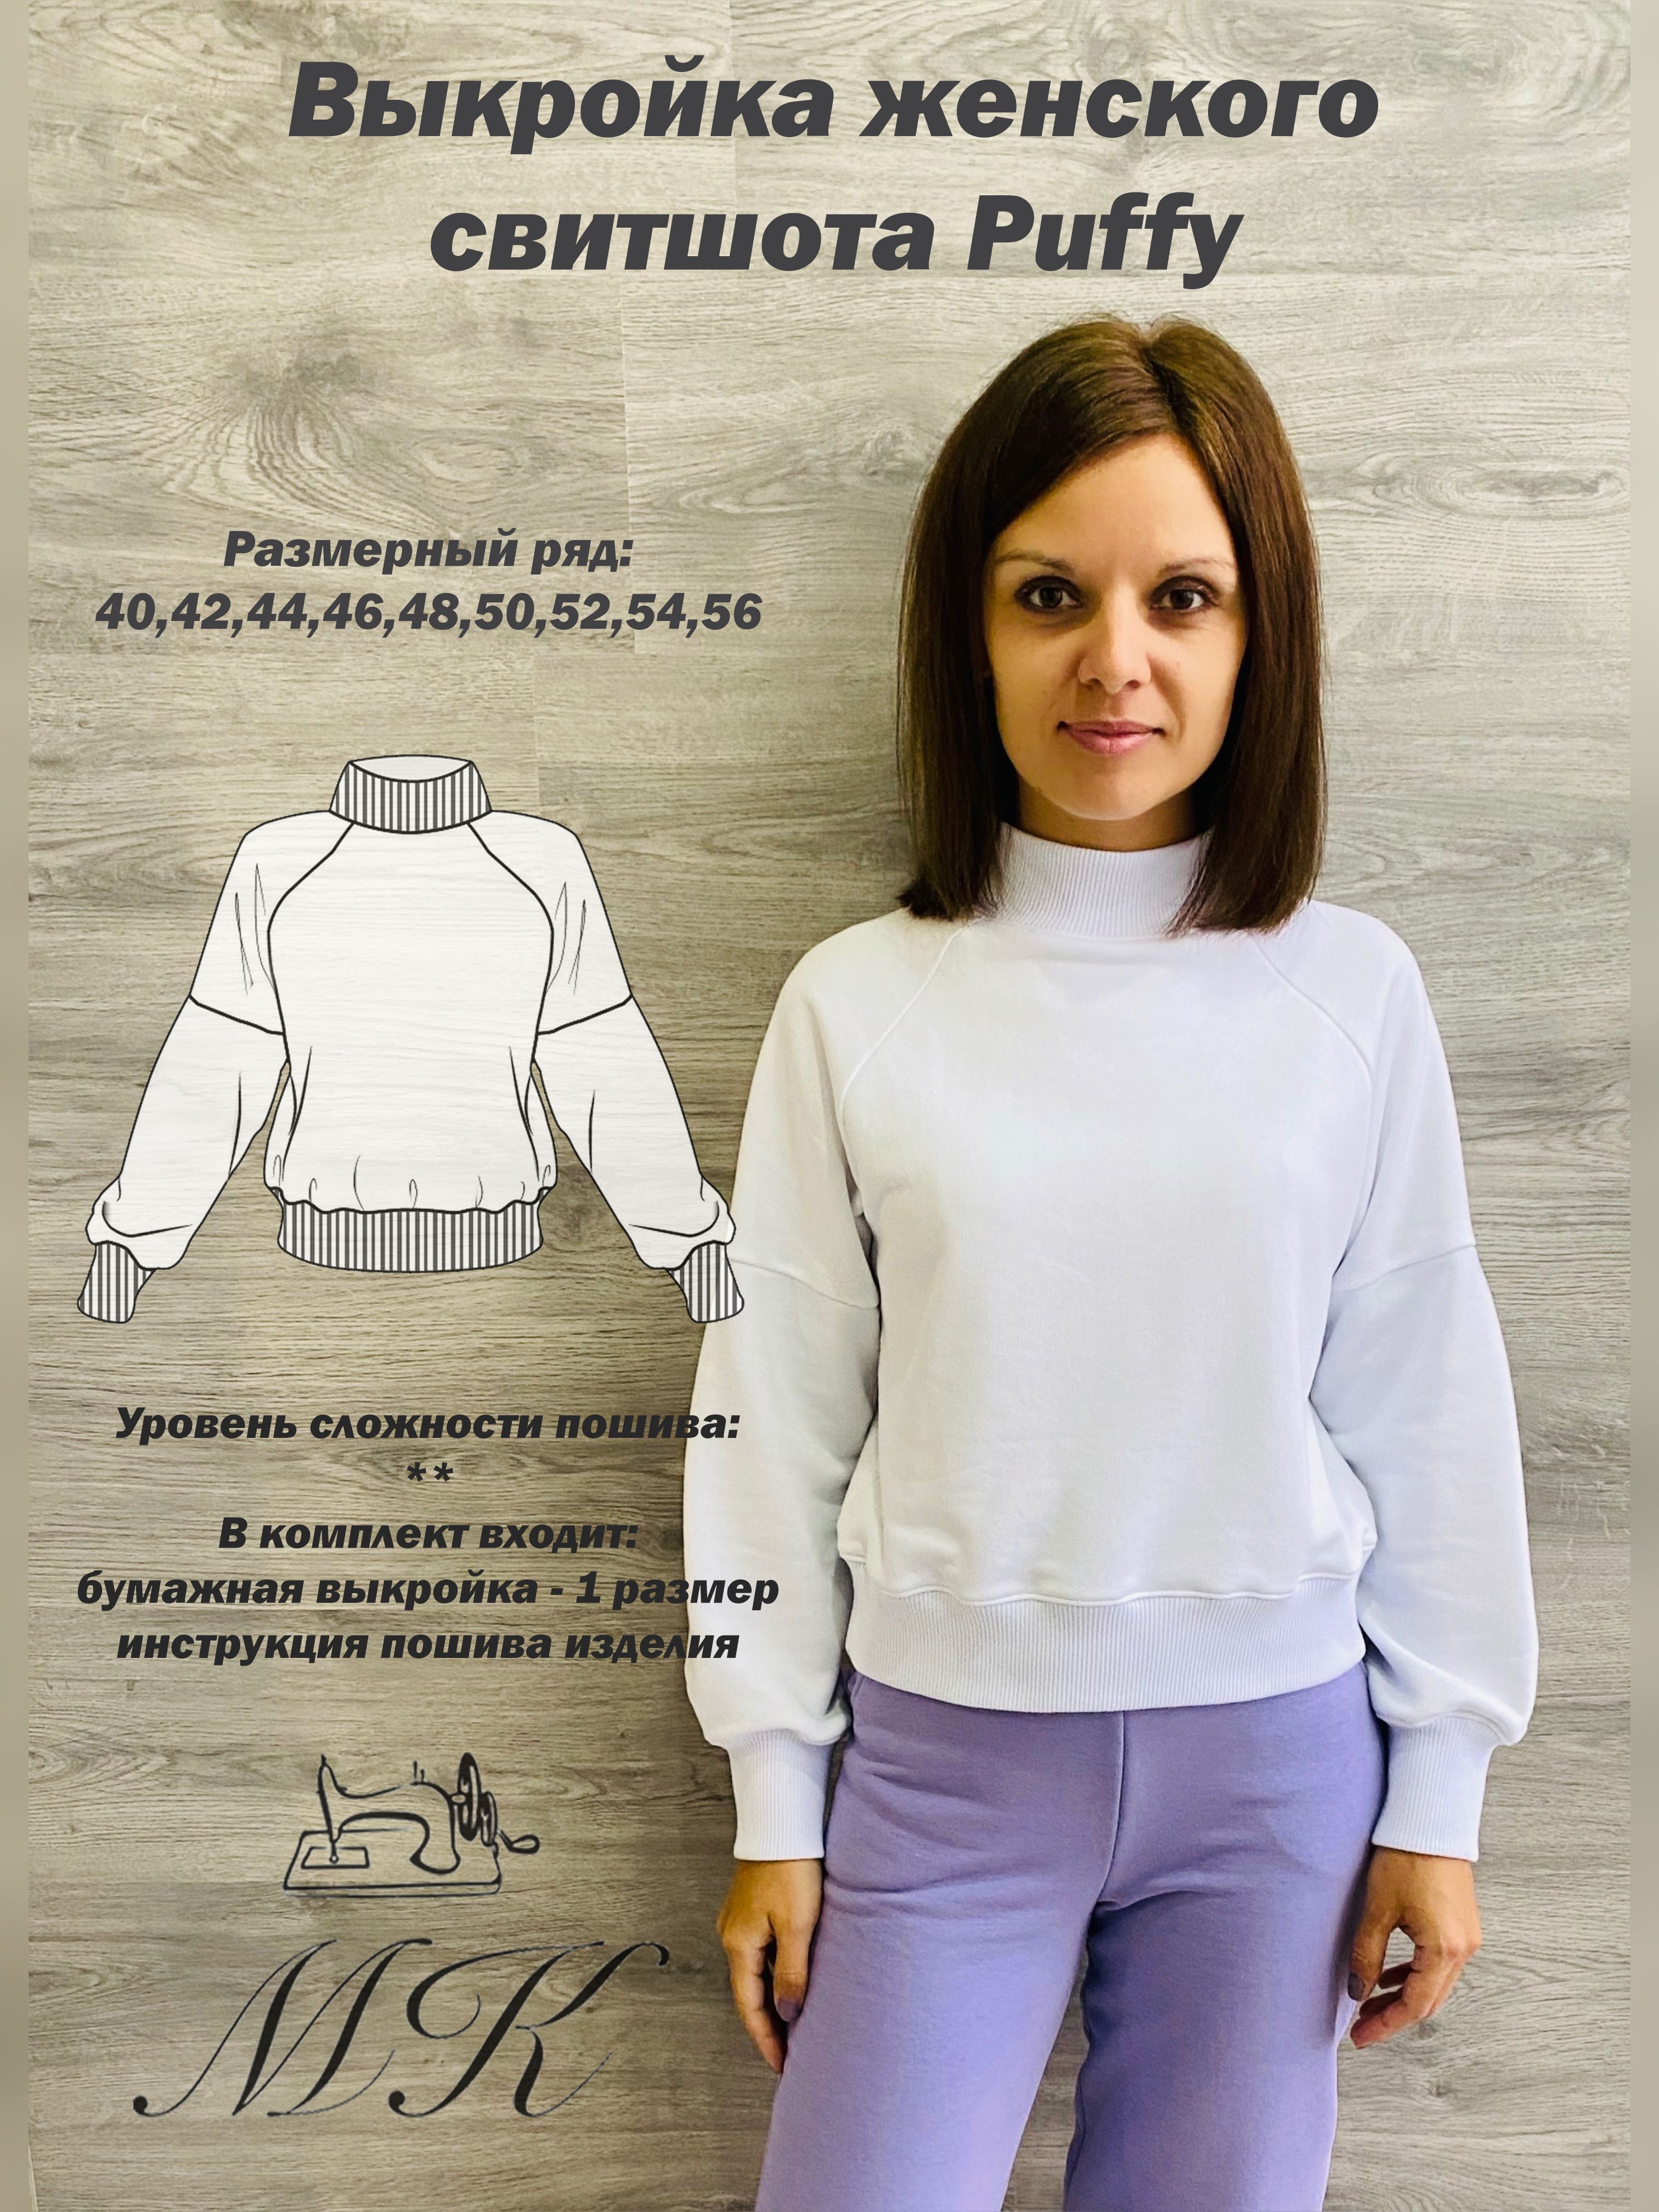 Выкройки женских рубашек и блуз от Vikisews — купить и скачать pdf